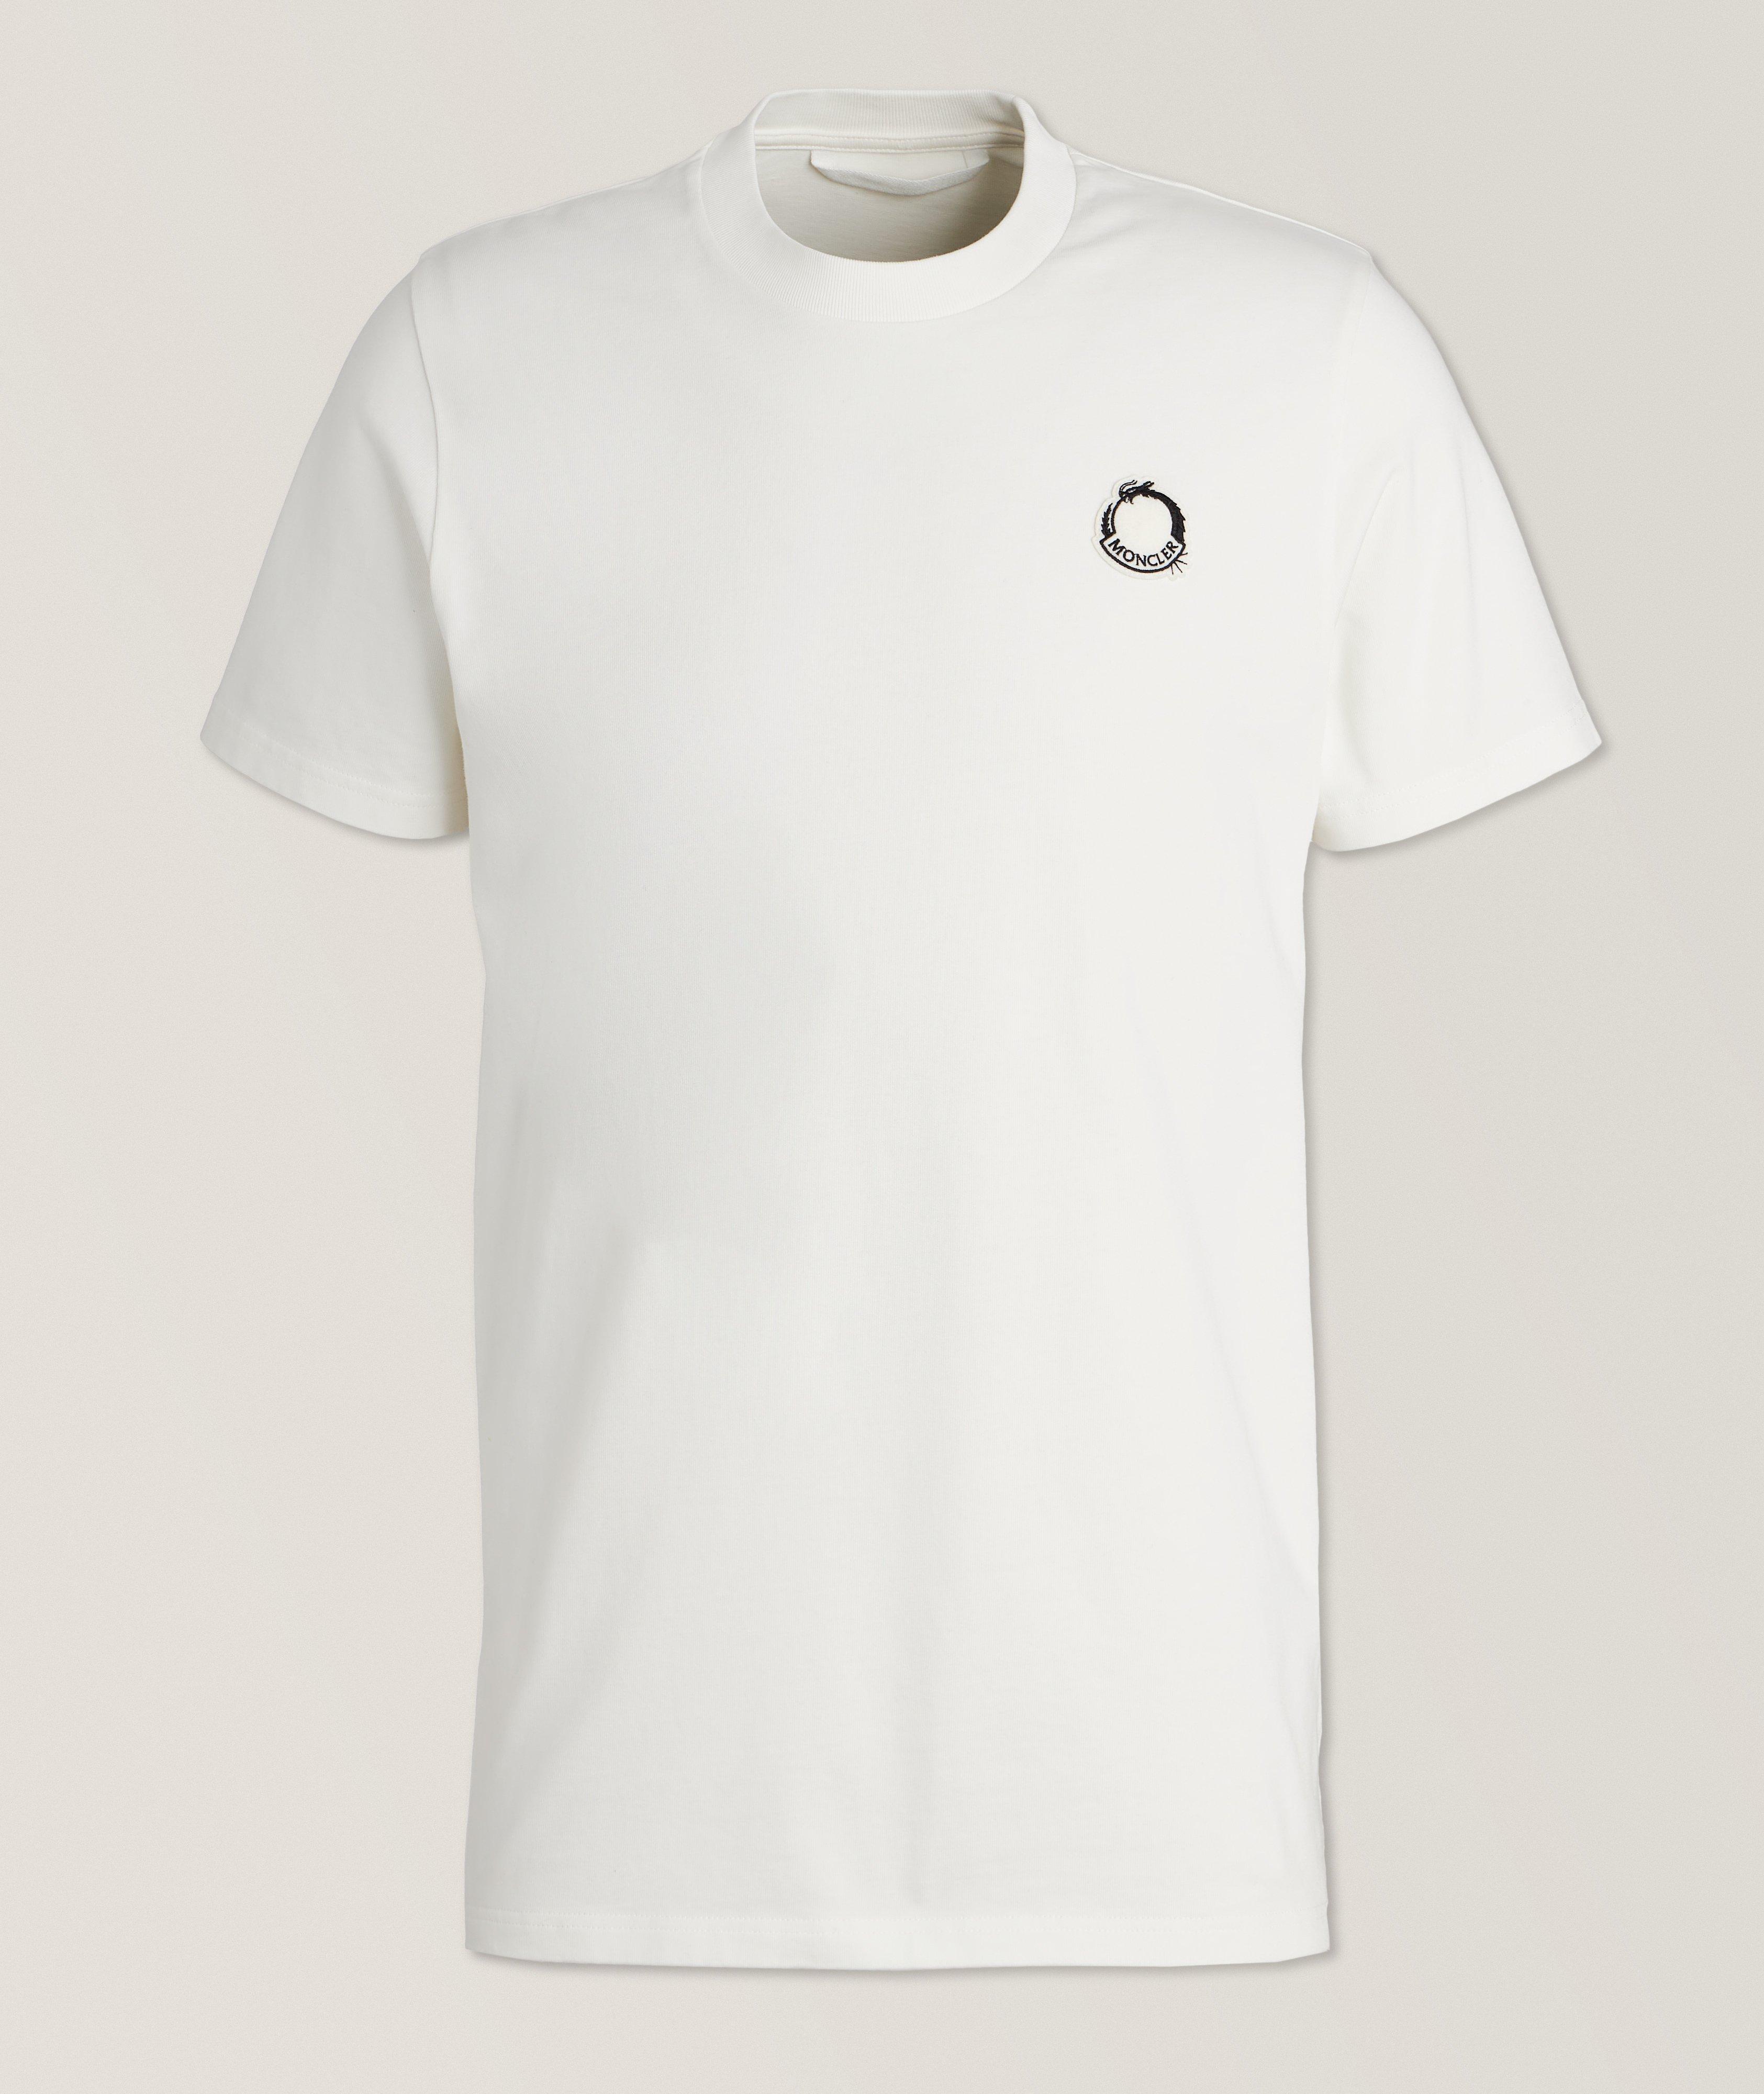 T-shirt en coton avec logo en feutre image 0